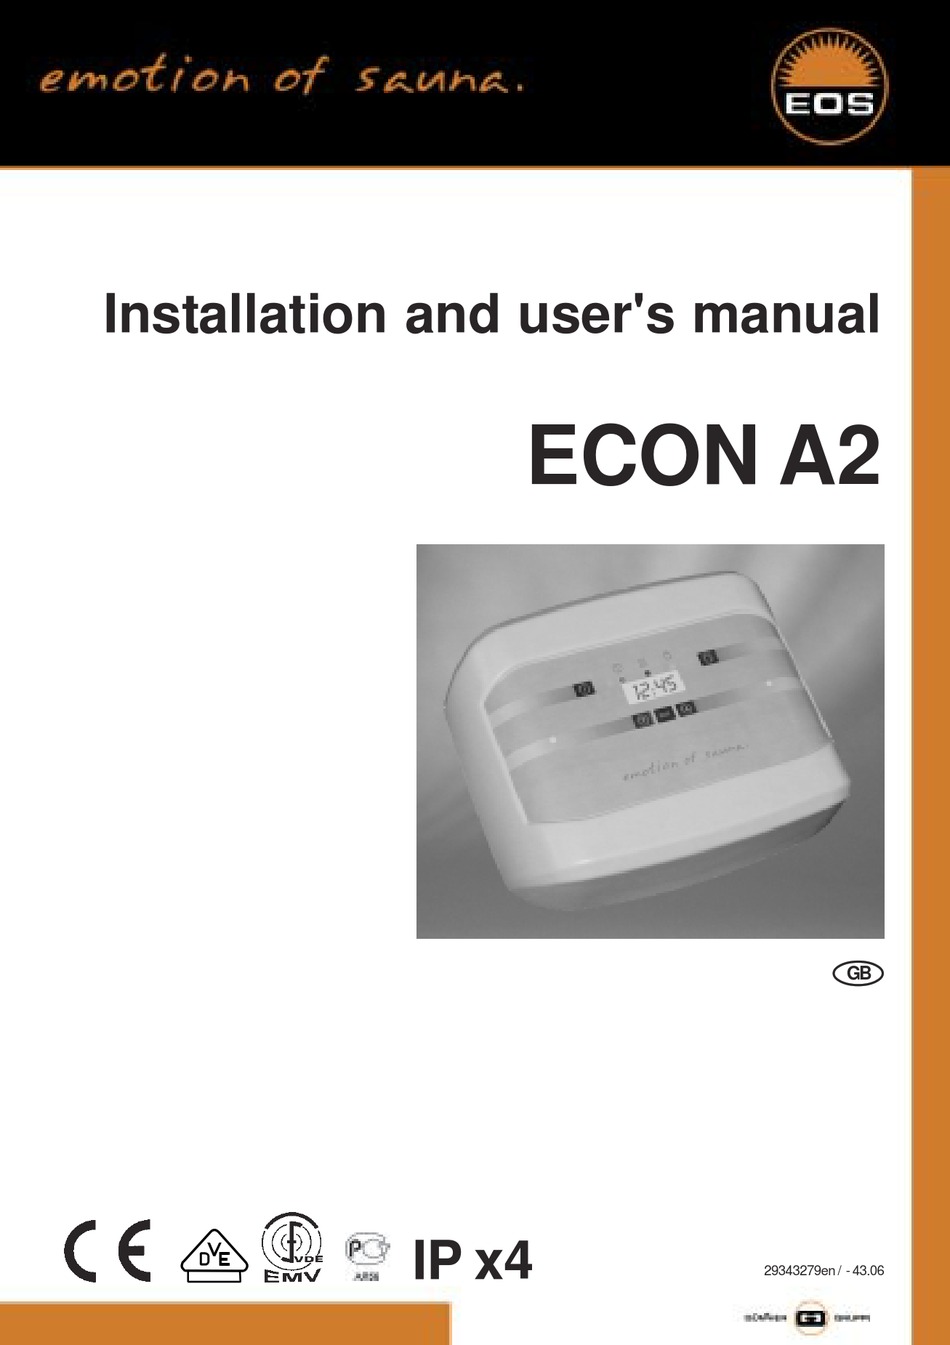 EOS Econ D1 Sauna control unit